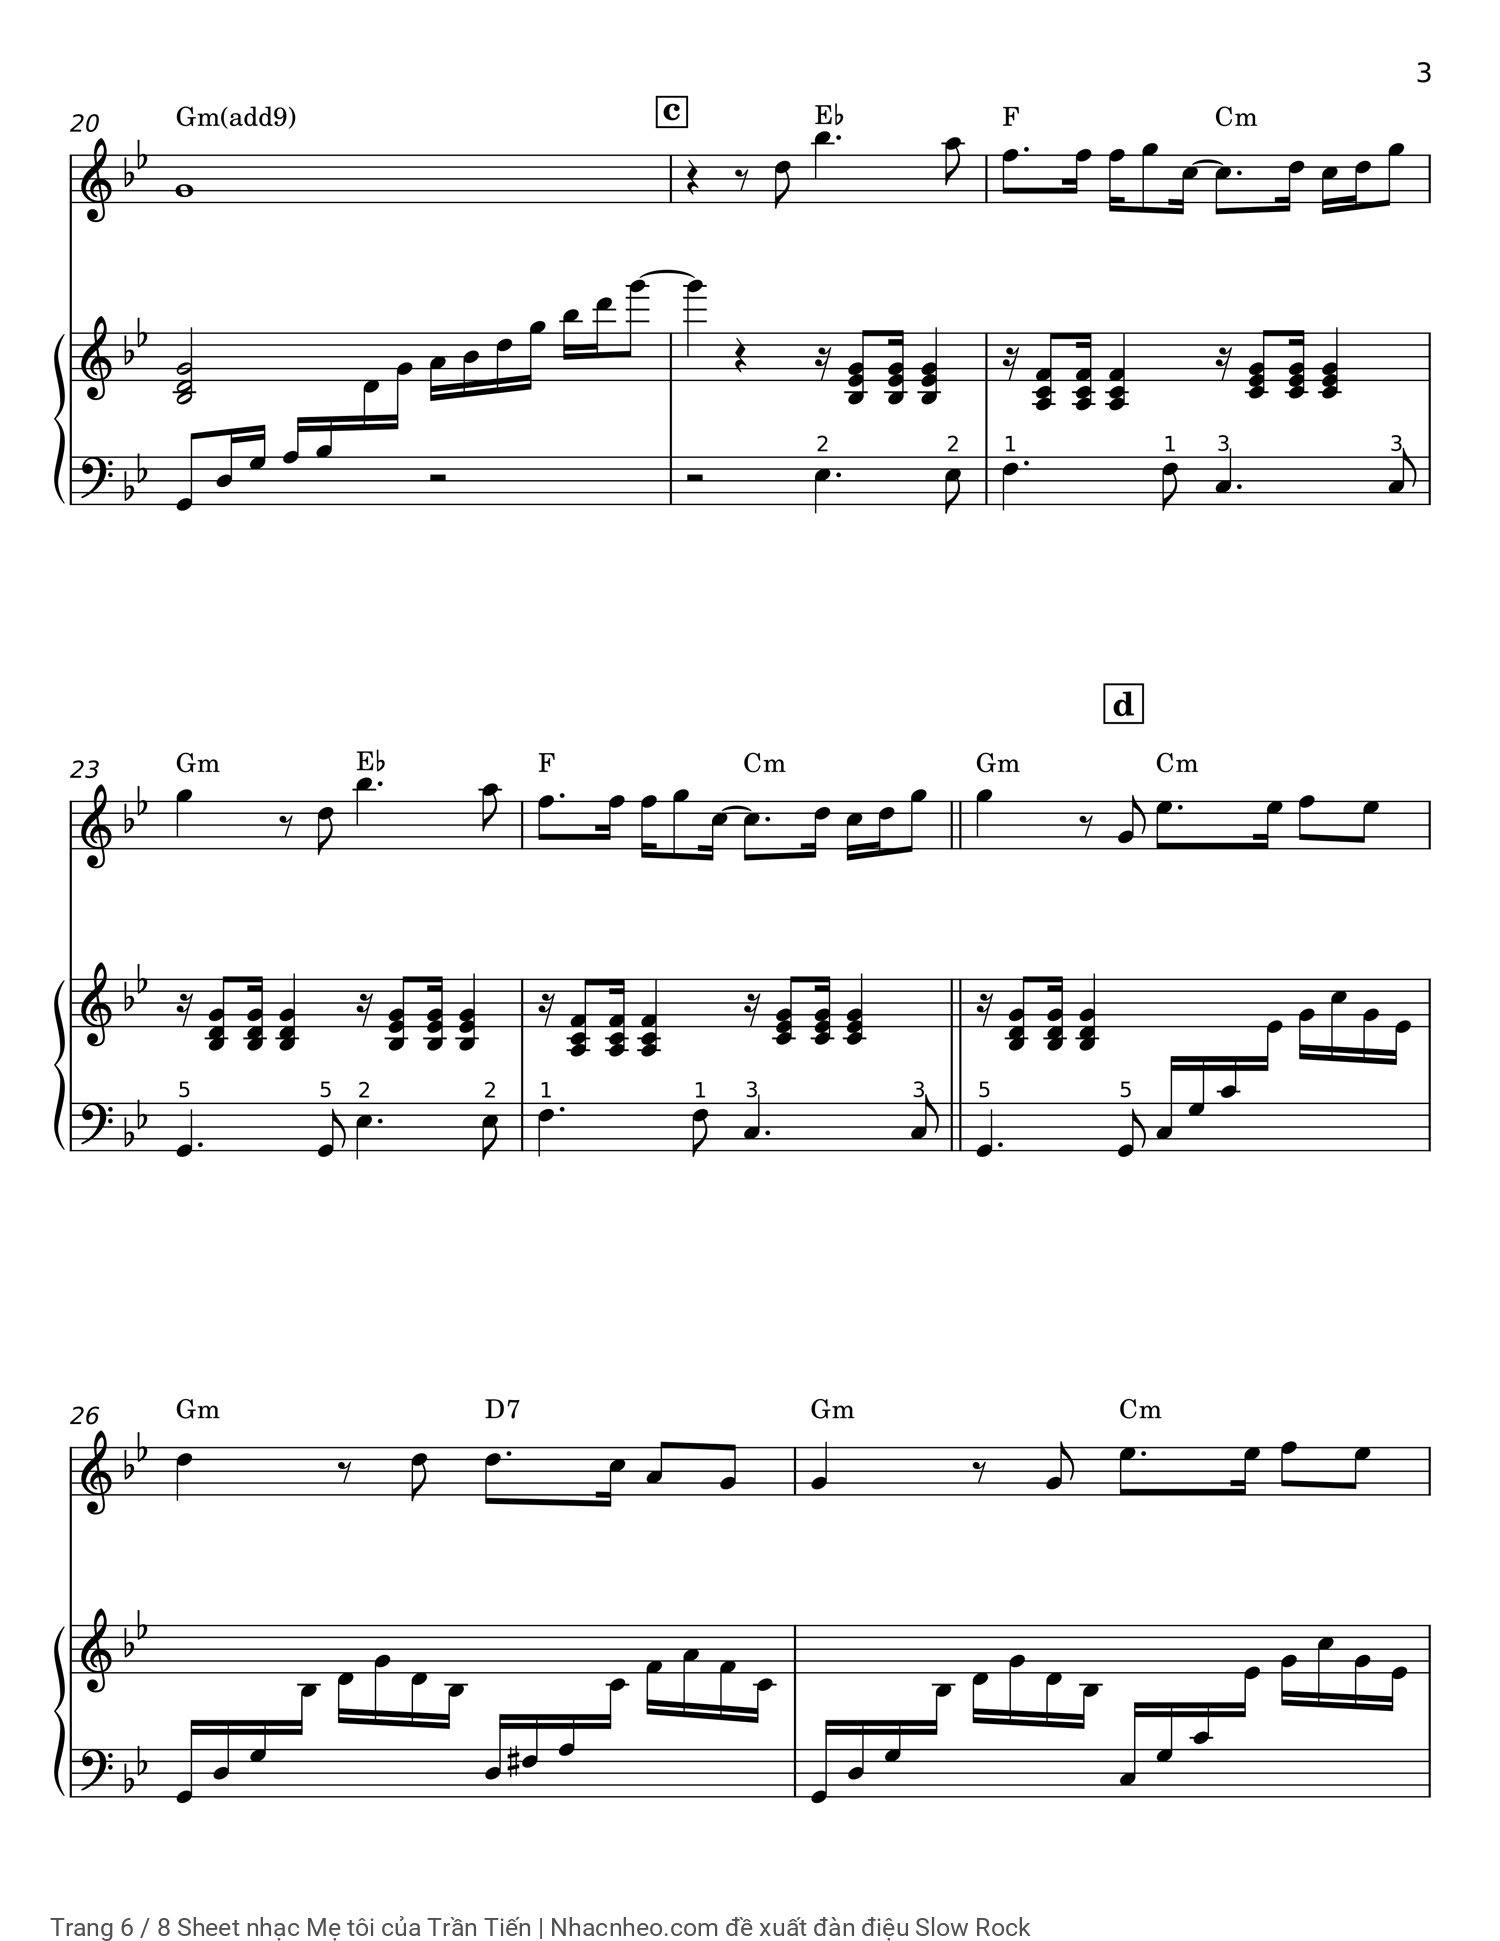 Trang 6 của Sheet nhạc PDF Piano bài hát Mẹ tôi - Trần Tiến